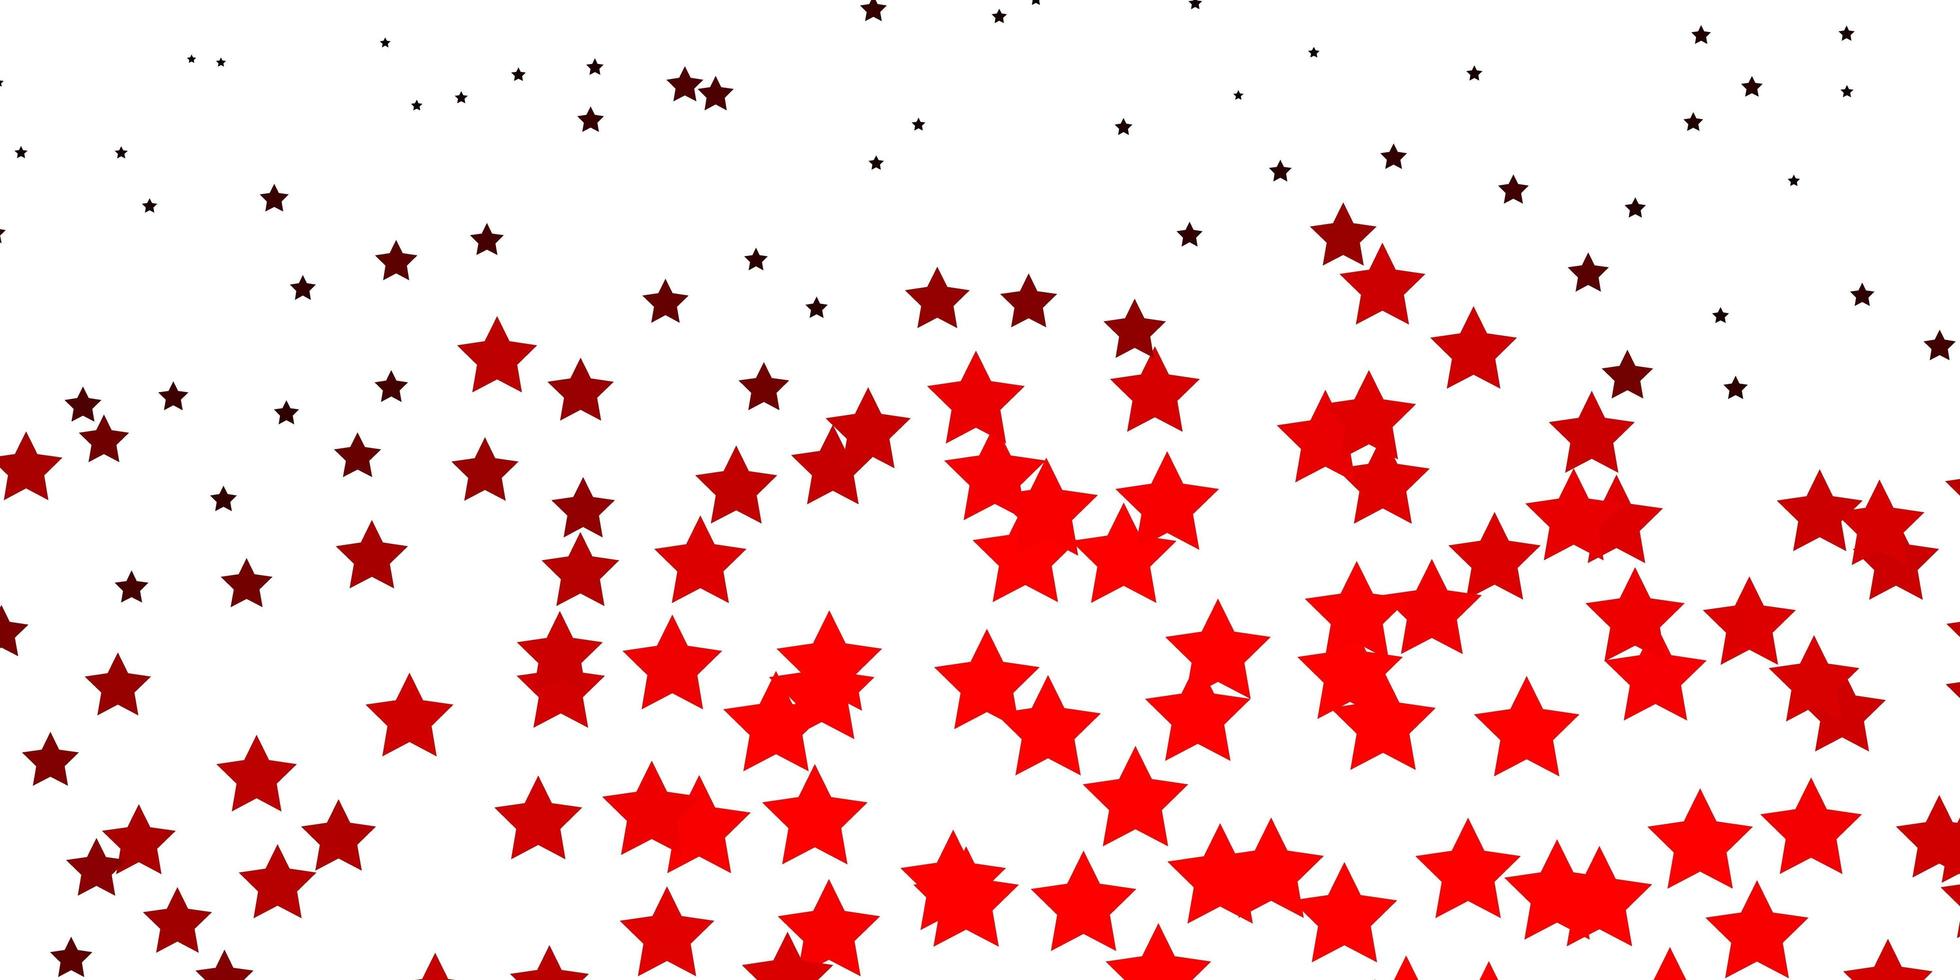 dunkelrote Vektortextur mit schönen Sternen. moderne geometrische abstrakte Illustration mit Sternen. Muster für Websites, Zielseiten. vektor